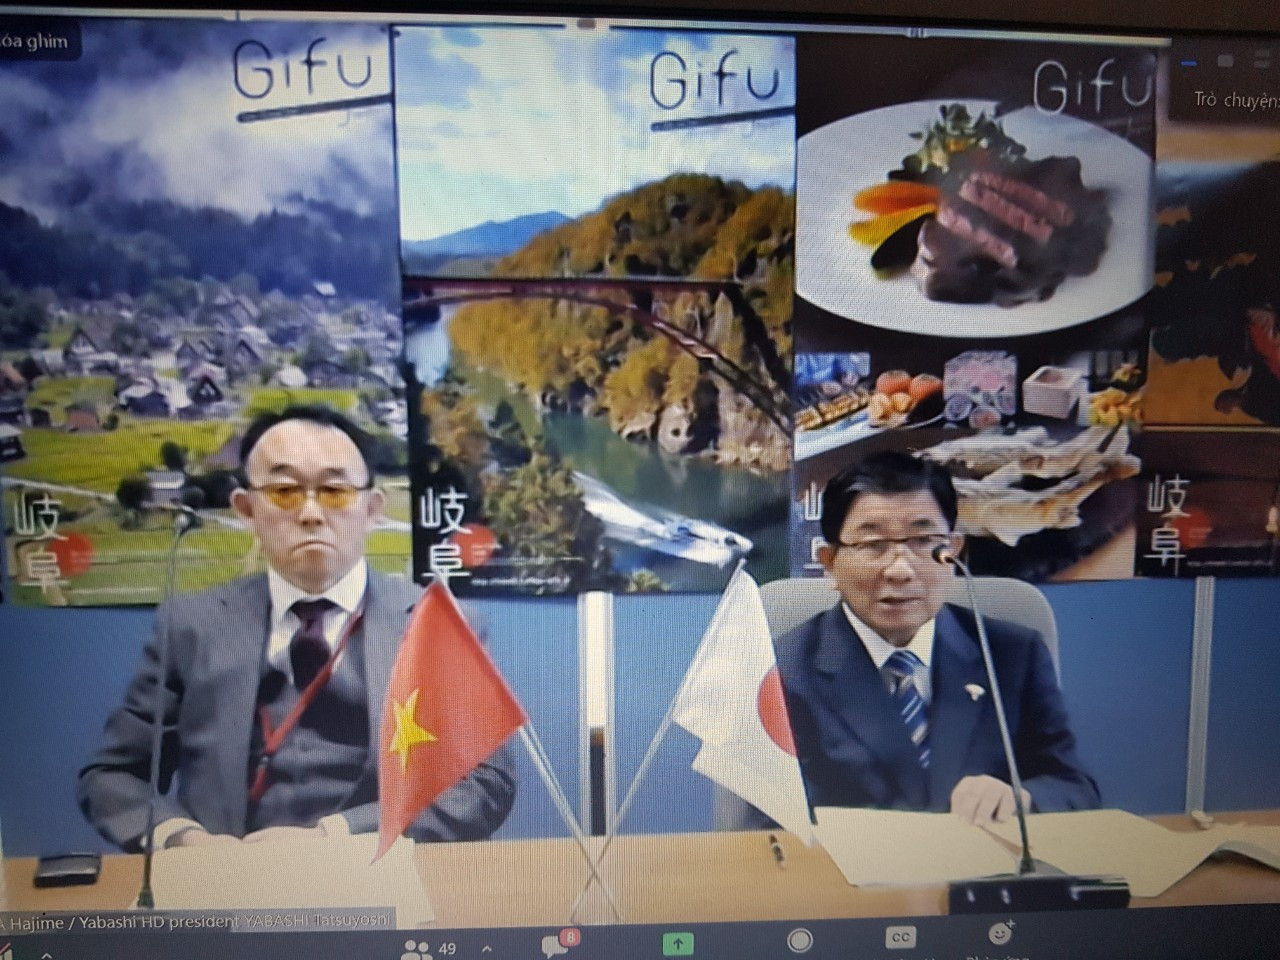 Thống đốc tỉnh Gifu Furuta Hajime phát biểu tại phiên gặp gỡ chính quyền. Ảnh chụp màn hình